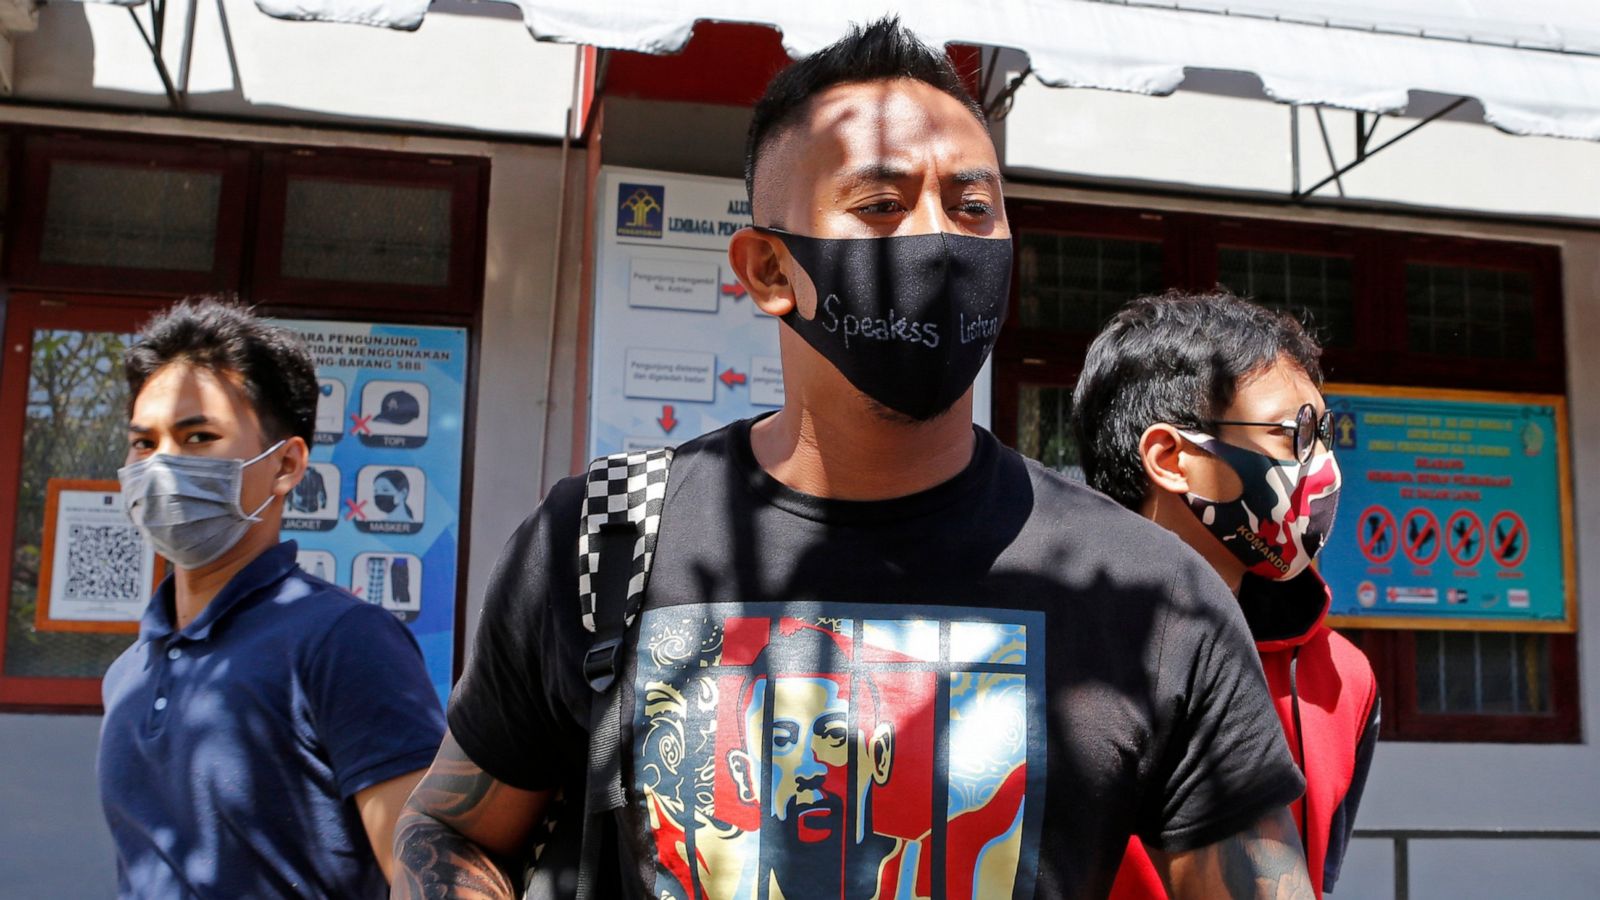 eksplodere Grønne bønner Løve Australian drug convict freed after 1 year in Bali prison - ABC News